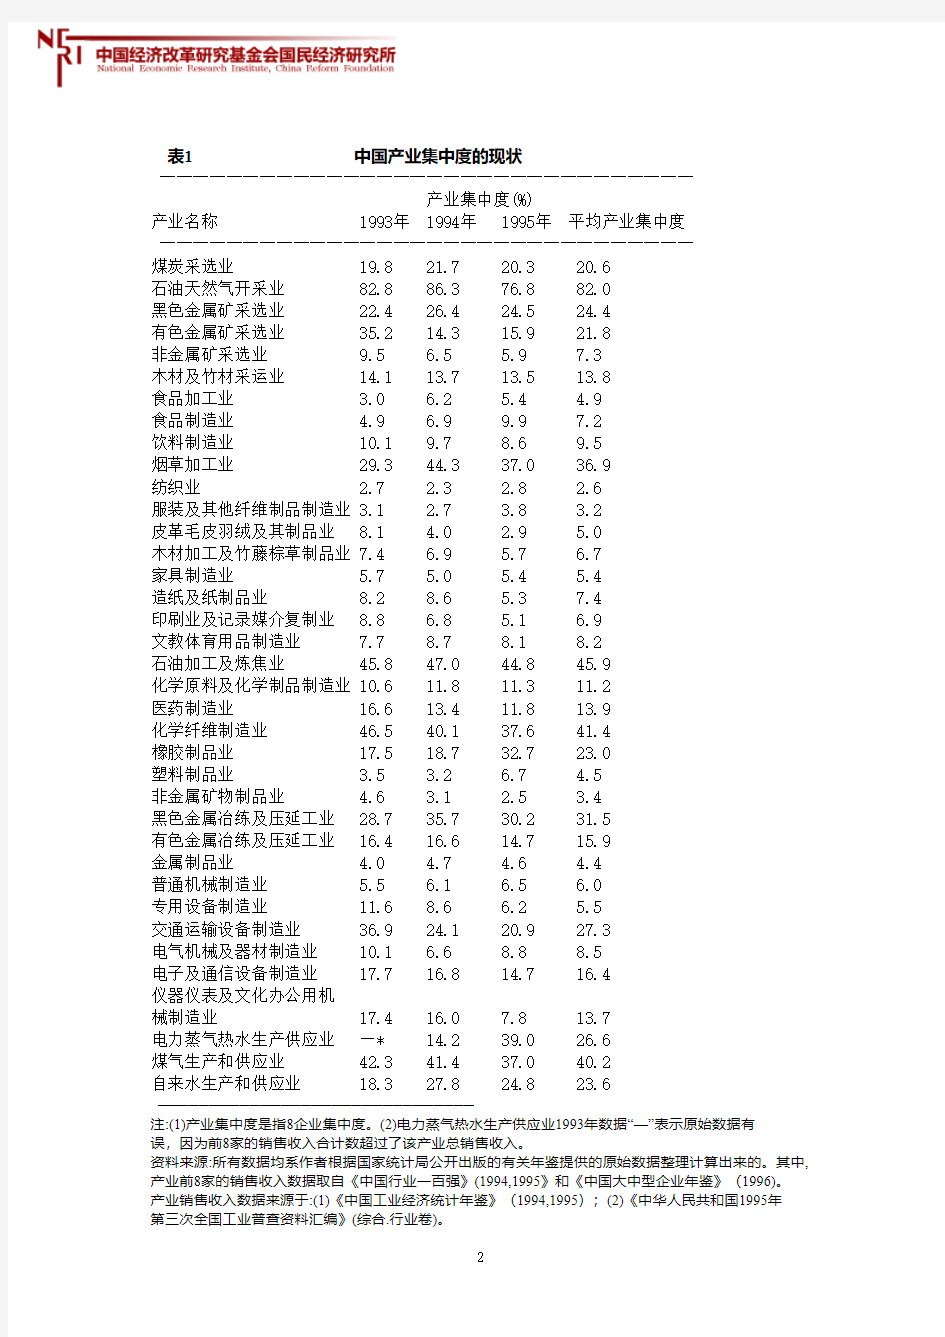 中国产业集中度与经济绩效关系的分析